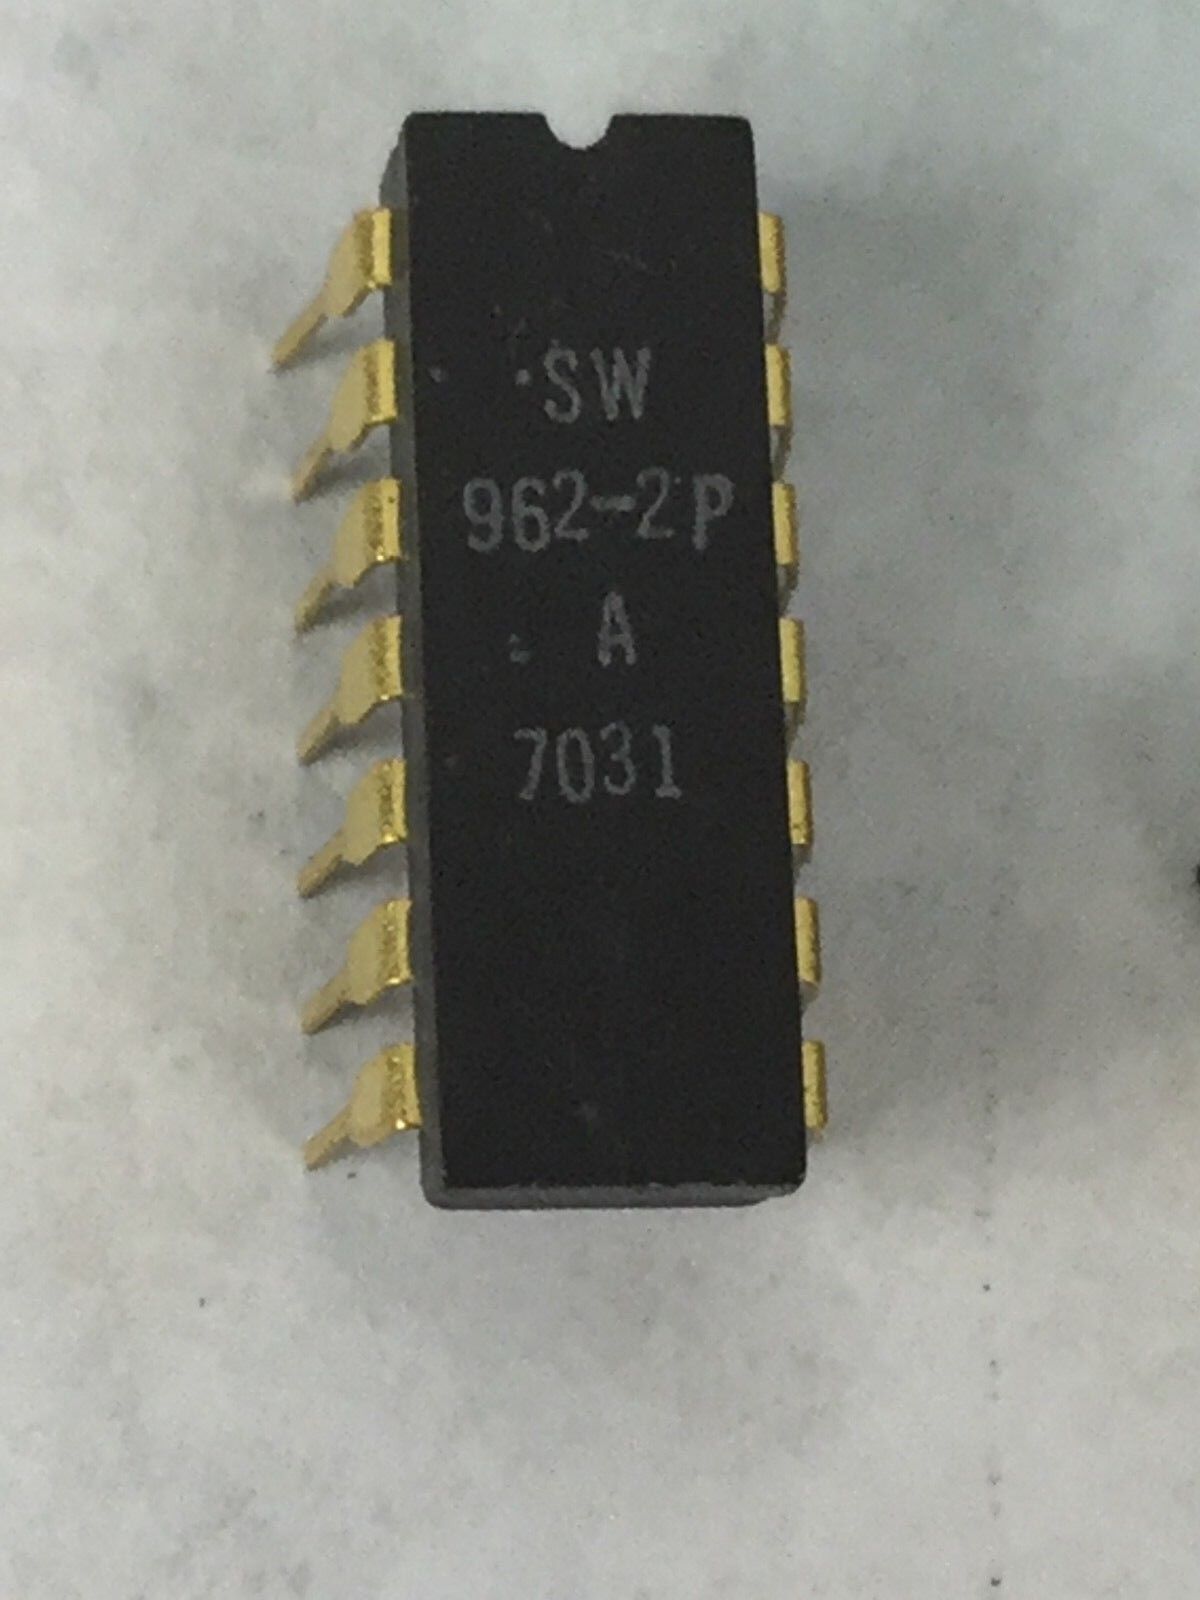 SW 962-2P STEWART WARNER  14 Pin Gold Dip  Lot of 8